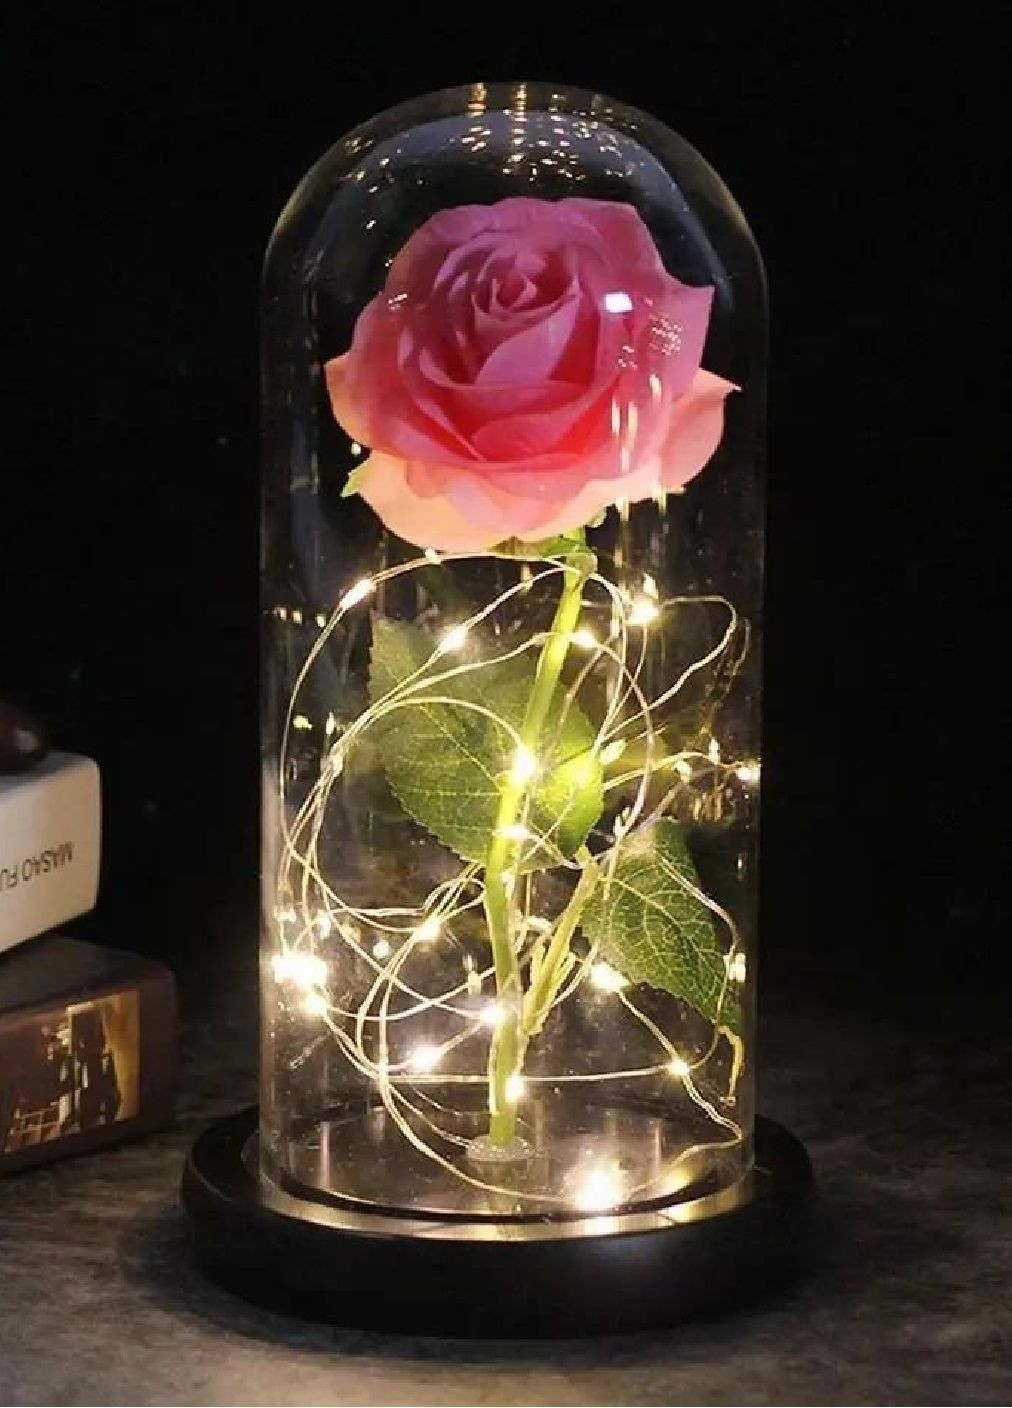 Настольная лампа ночник светильник роза с подсветкой от батареек в стеклянной колбе 20 см (476454-Prob) Розовая Unbranded (282821384)